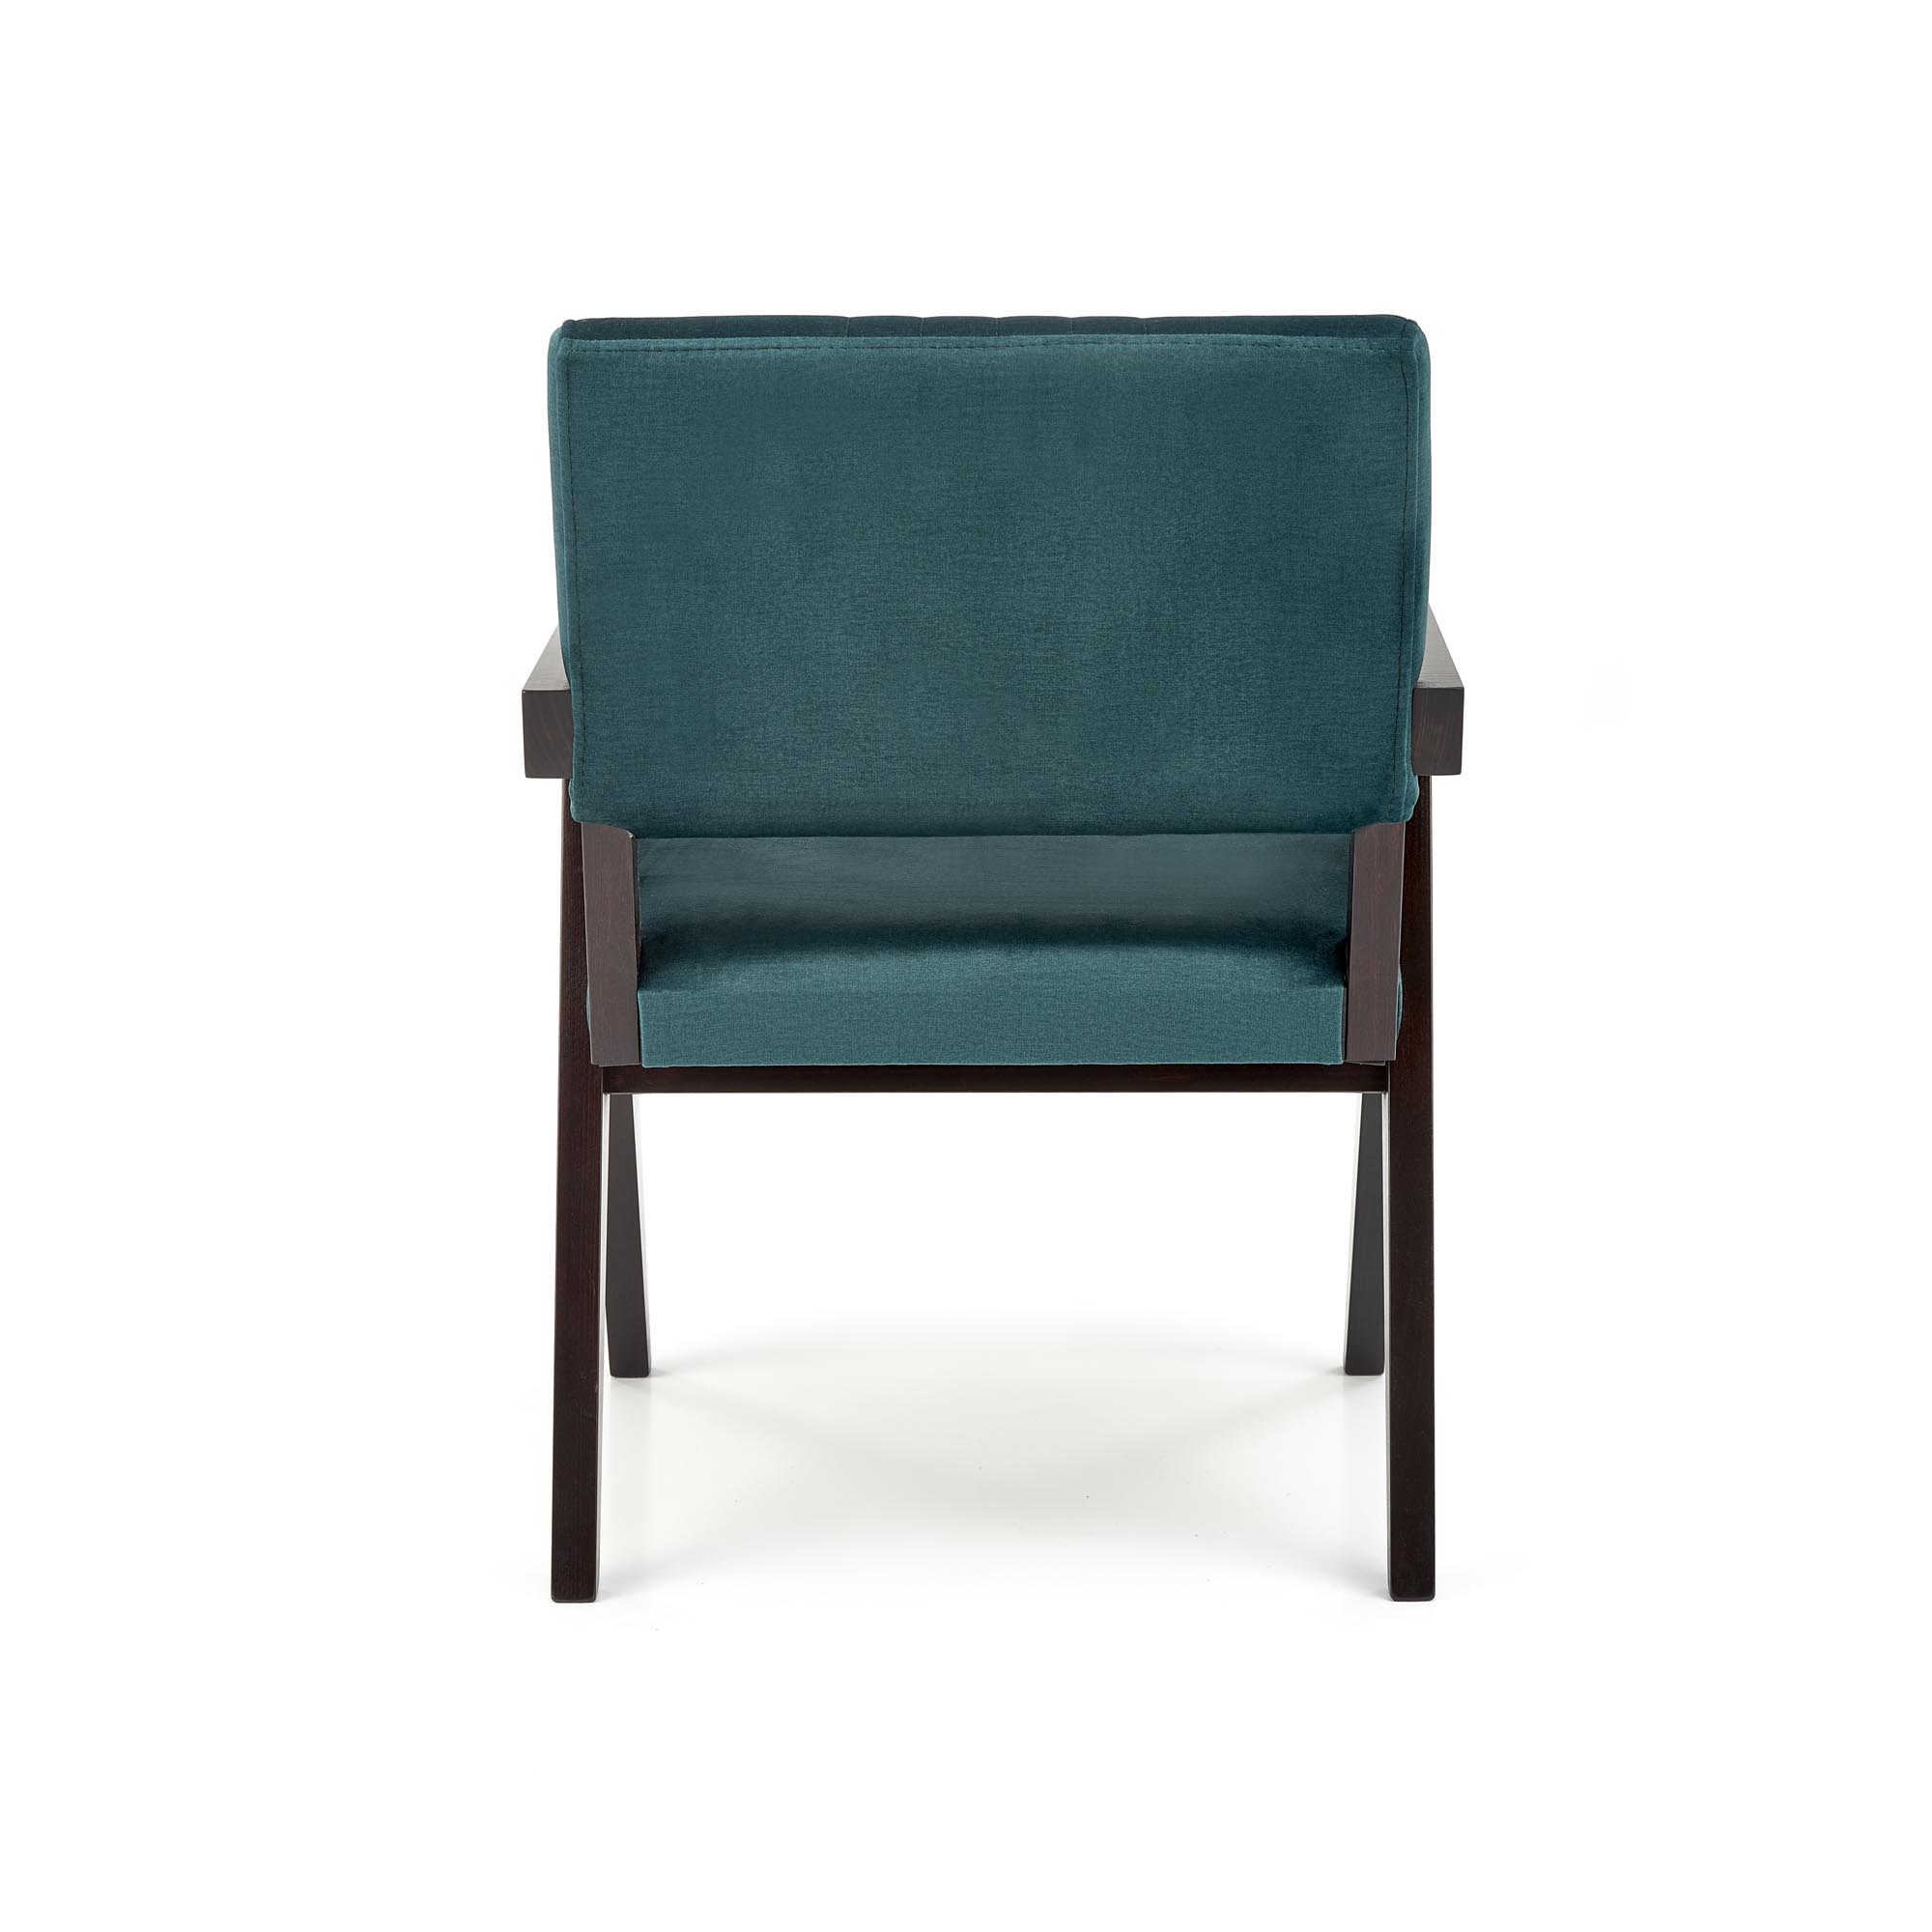 Židle čalouněná Memory - heban / tmavý Zelený Židle čalouněná memory - heban / tmavý Zelený